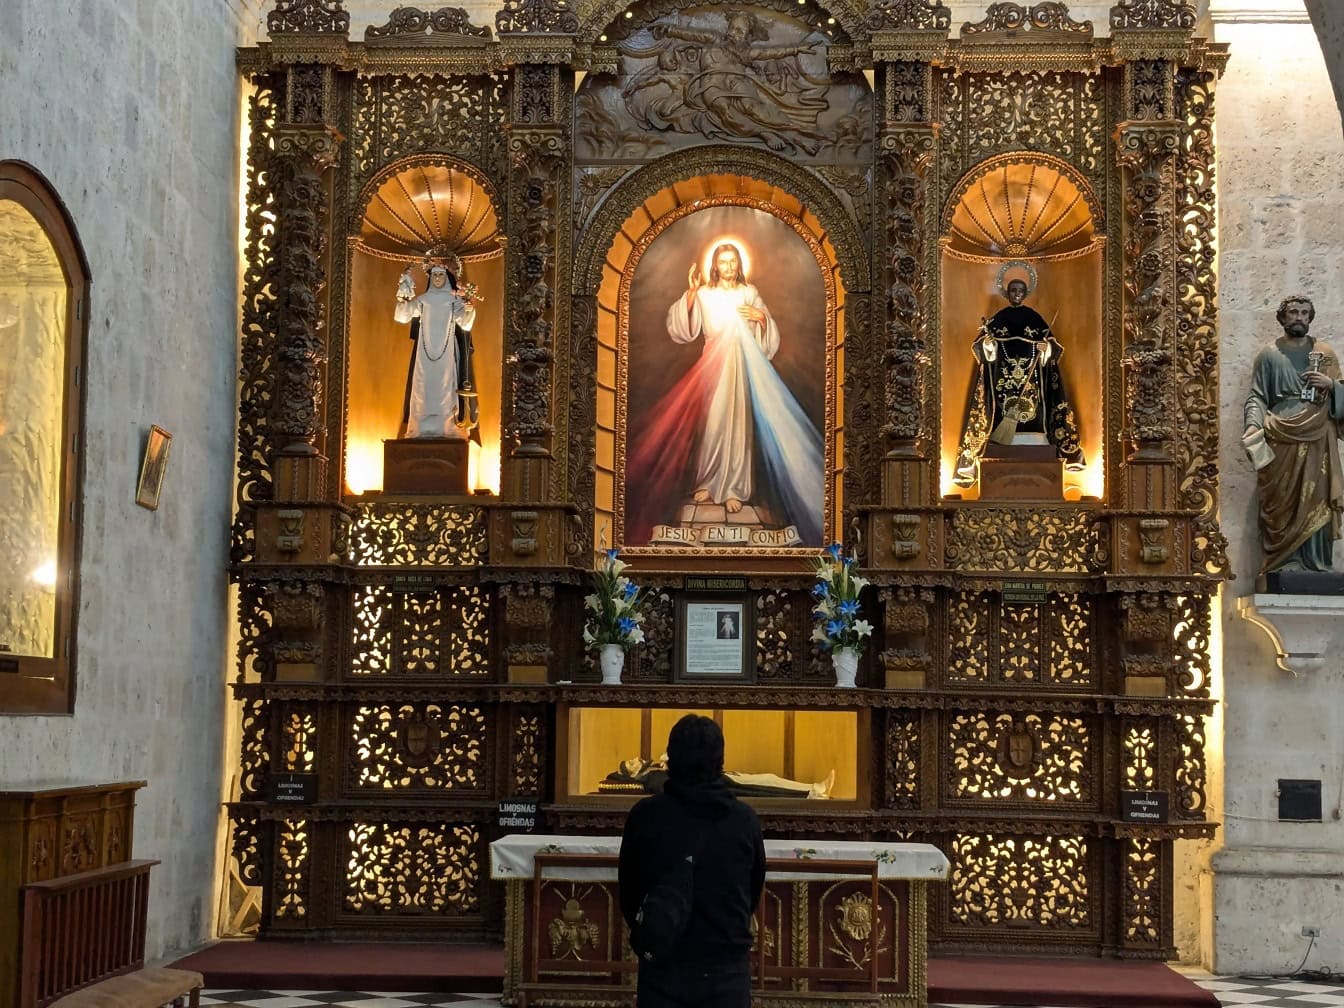 Katolik kilisesinde İsa Mesih’in bir simgesi olan süslü sunağın önünde ayakta duran ve dua eden kişi